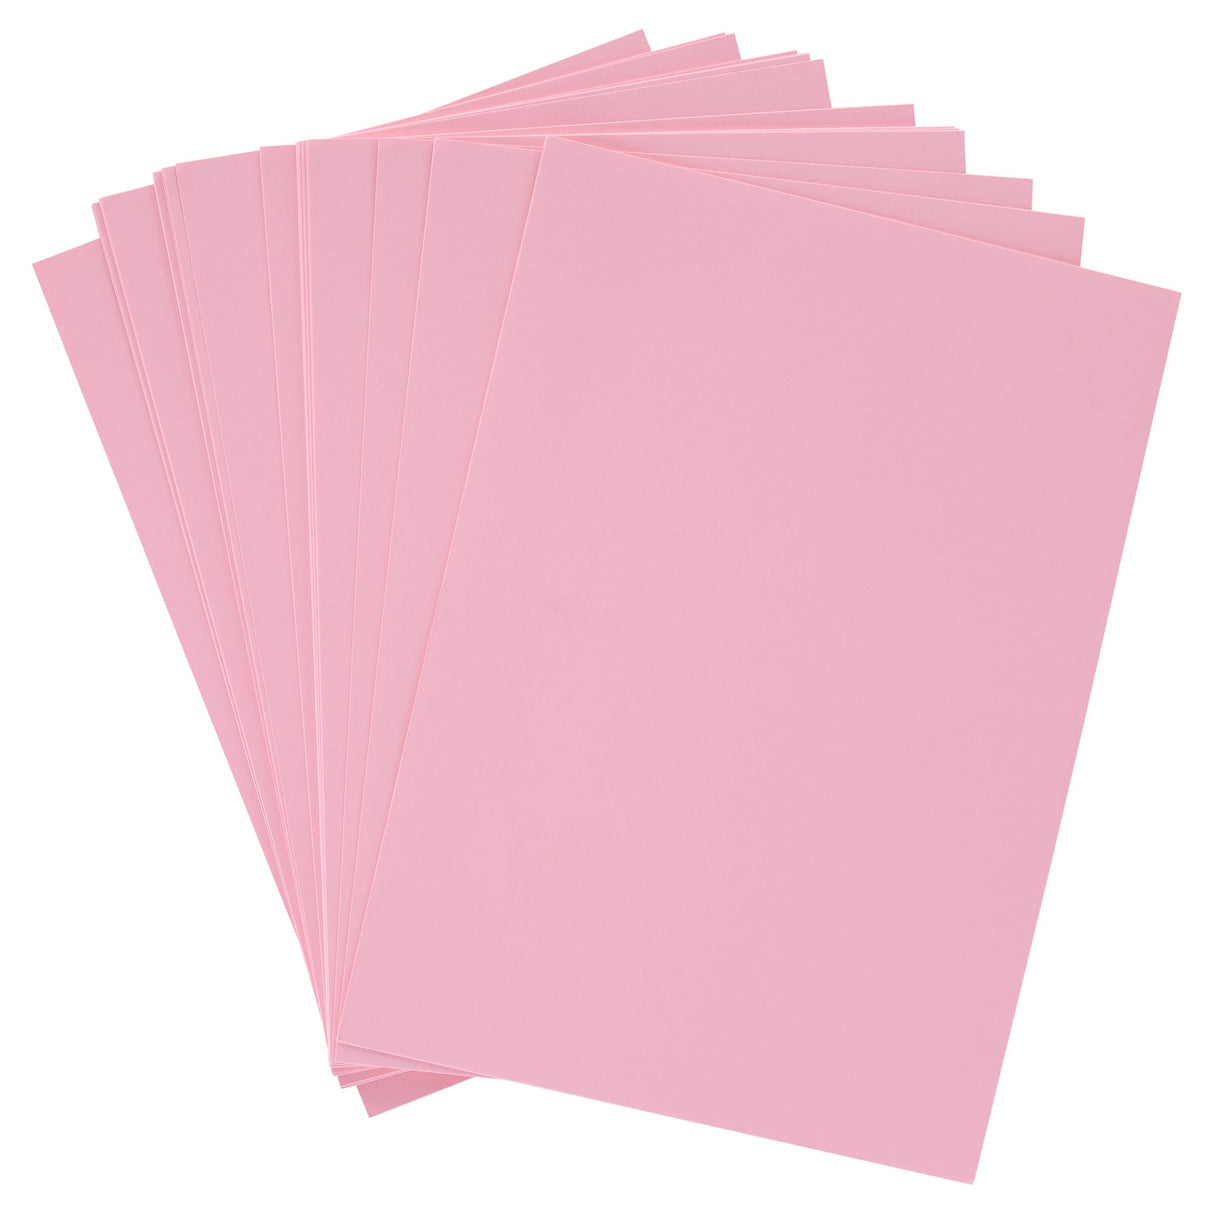 Premier Activity A4 Card - 160 gsm - Pink - 50 Sheets-Craft Paper & Card-Premier|StationeryShop.co.uk